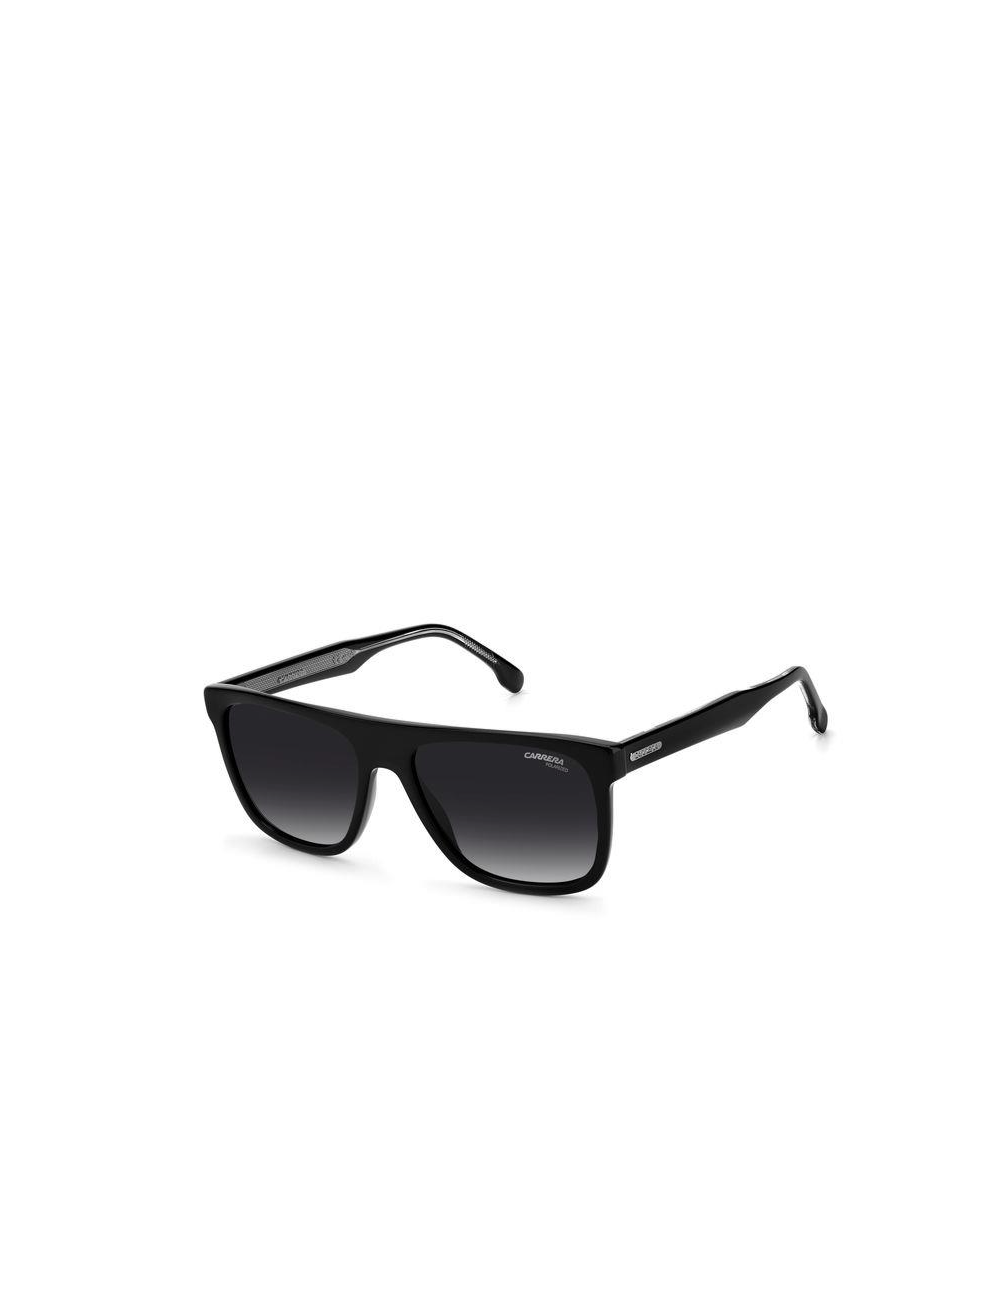 Carrera CARRERA 267/S 807 polarized sunglasses for men – Ottica Mauro